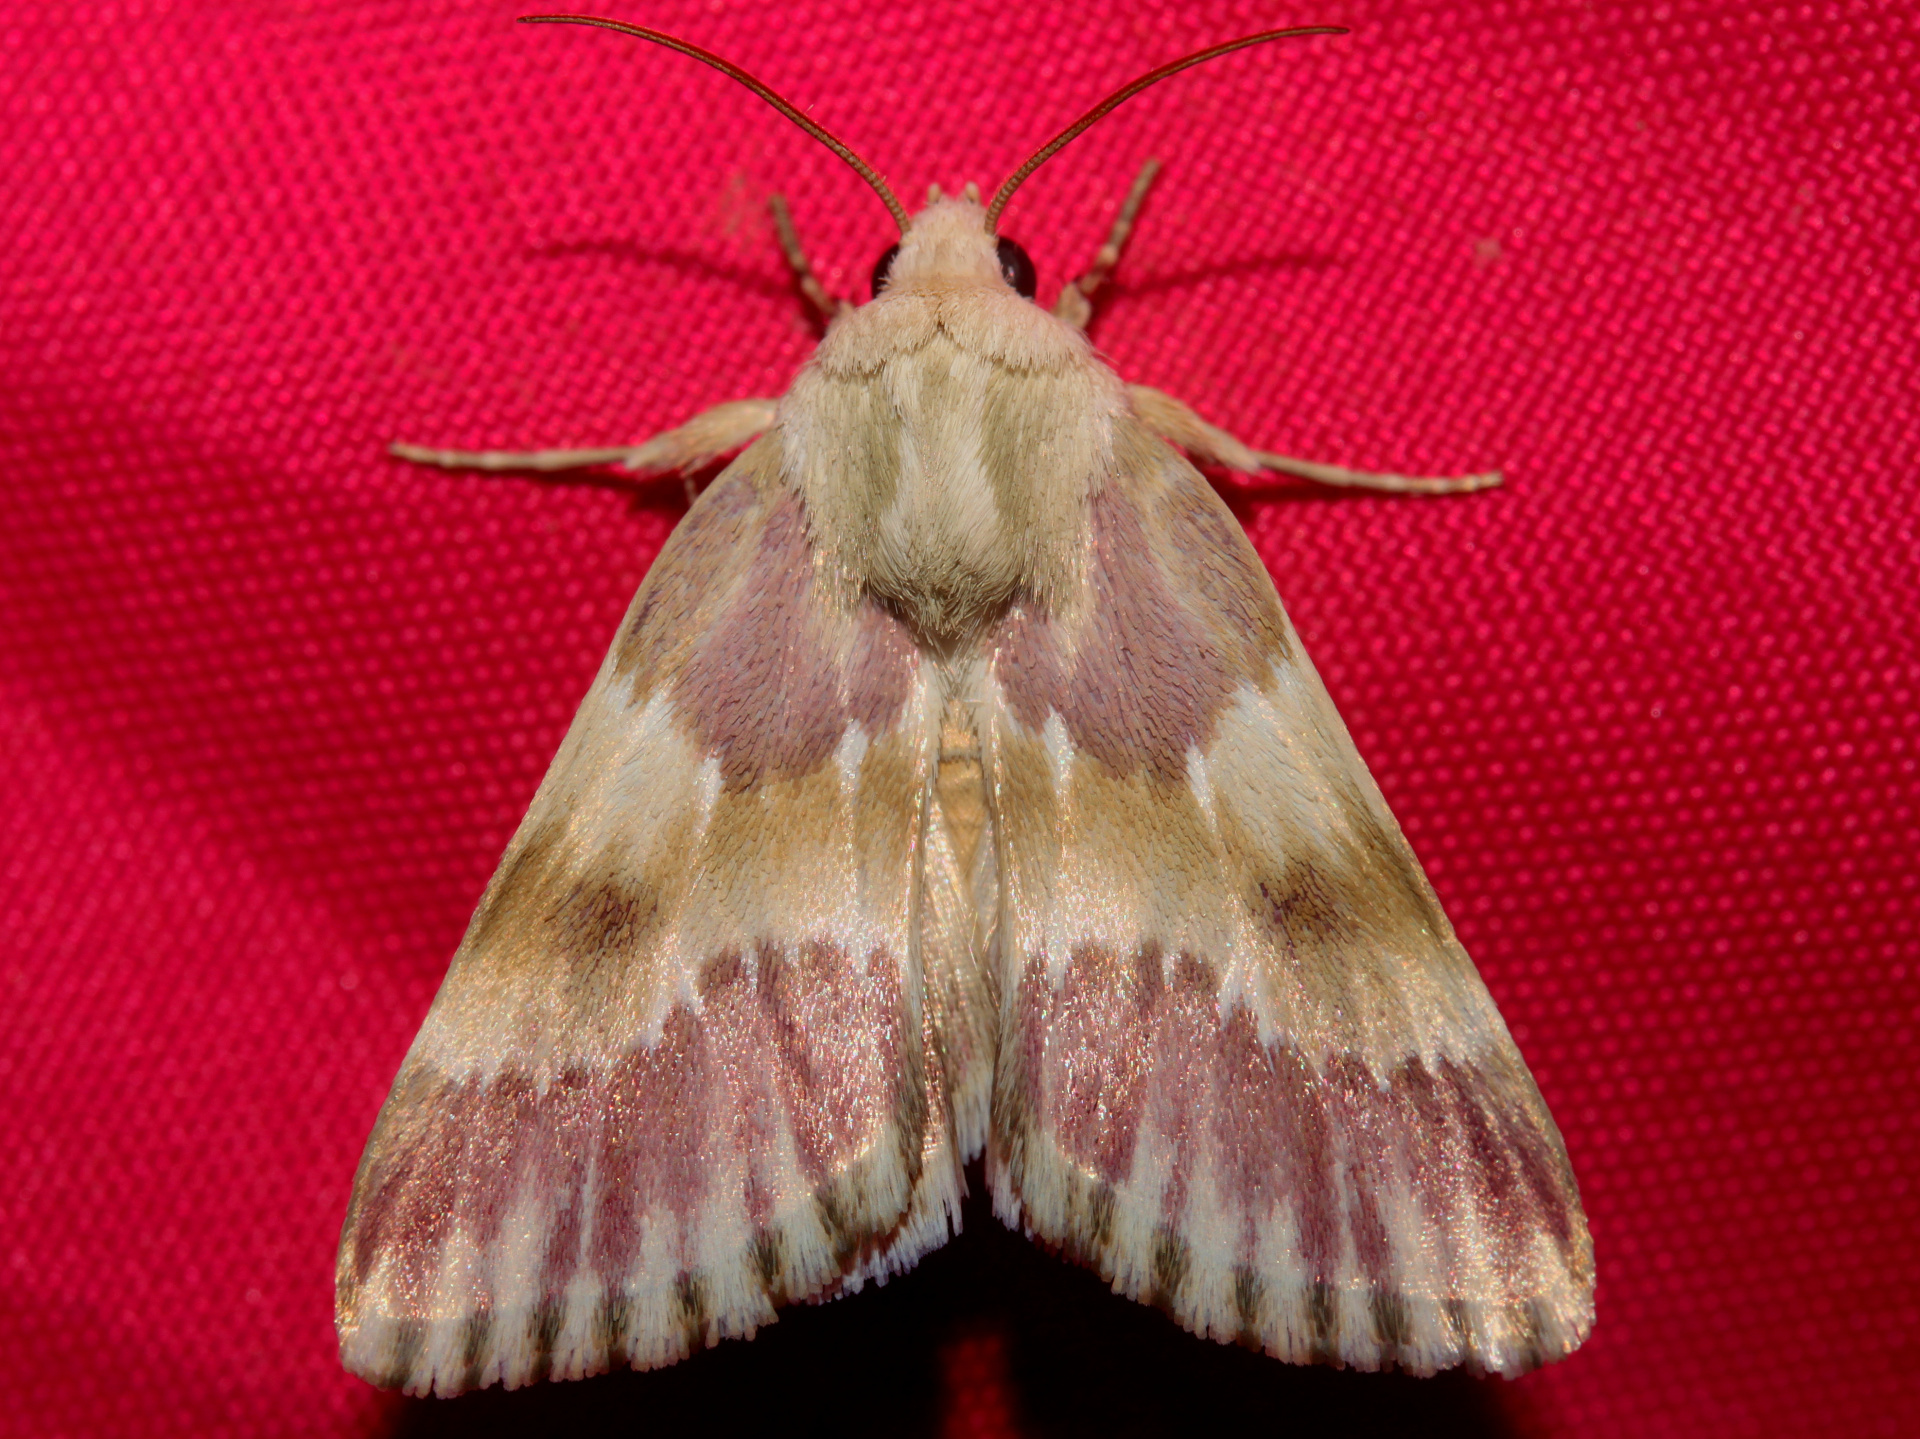 Schinia sanguinea gloriosa (Podróże » USA: Drogi nie obrane » Zwierzęta » Owady » Motyle i ćmy » Noctuidae)